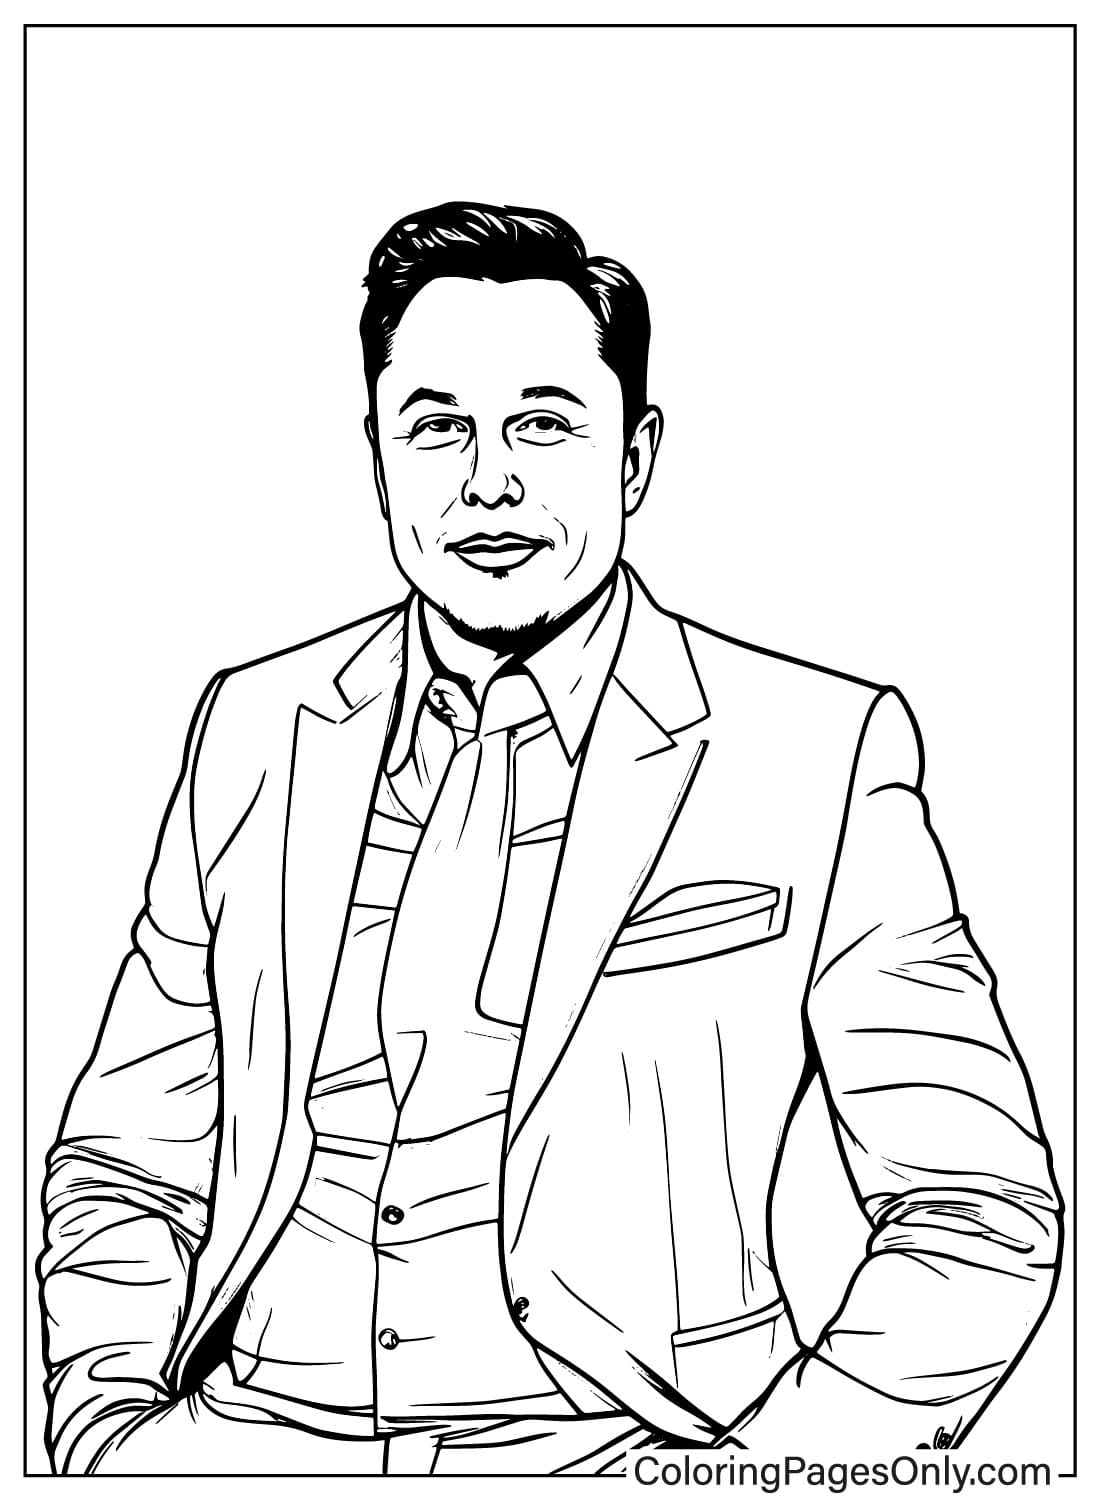 Immagini da colorare di Elon Musk